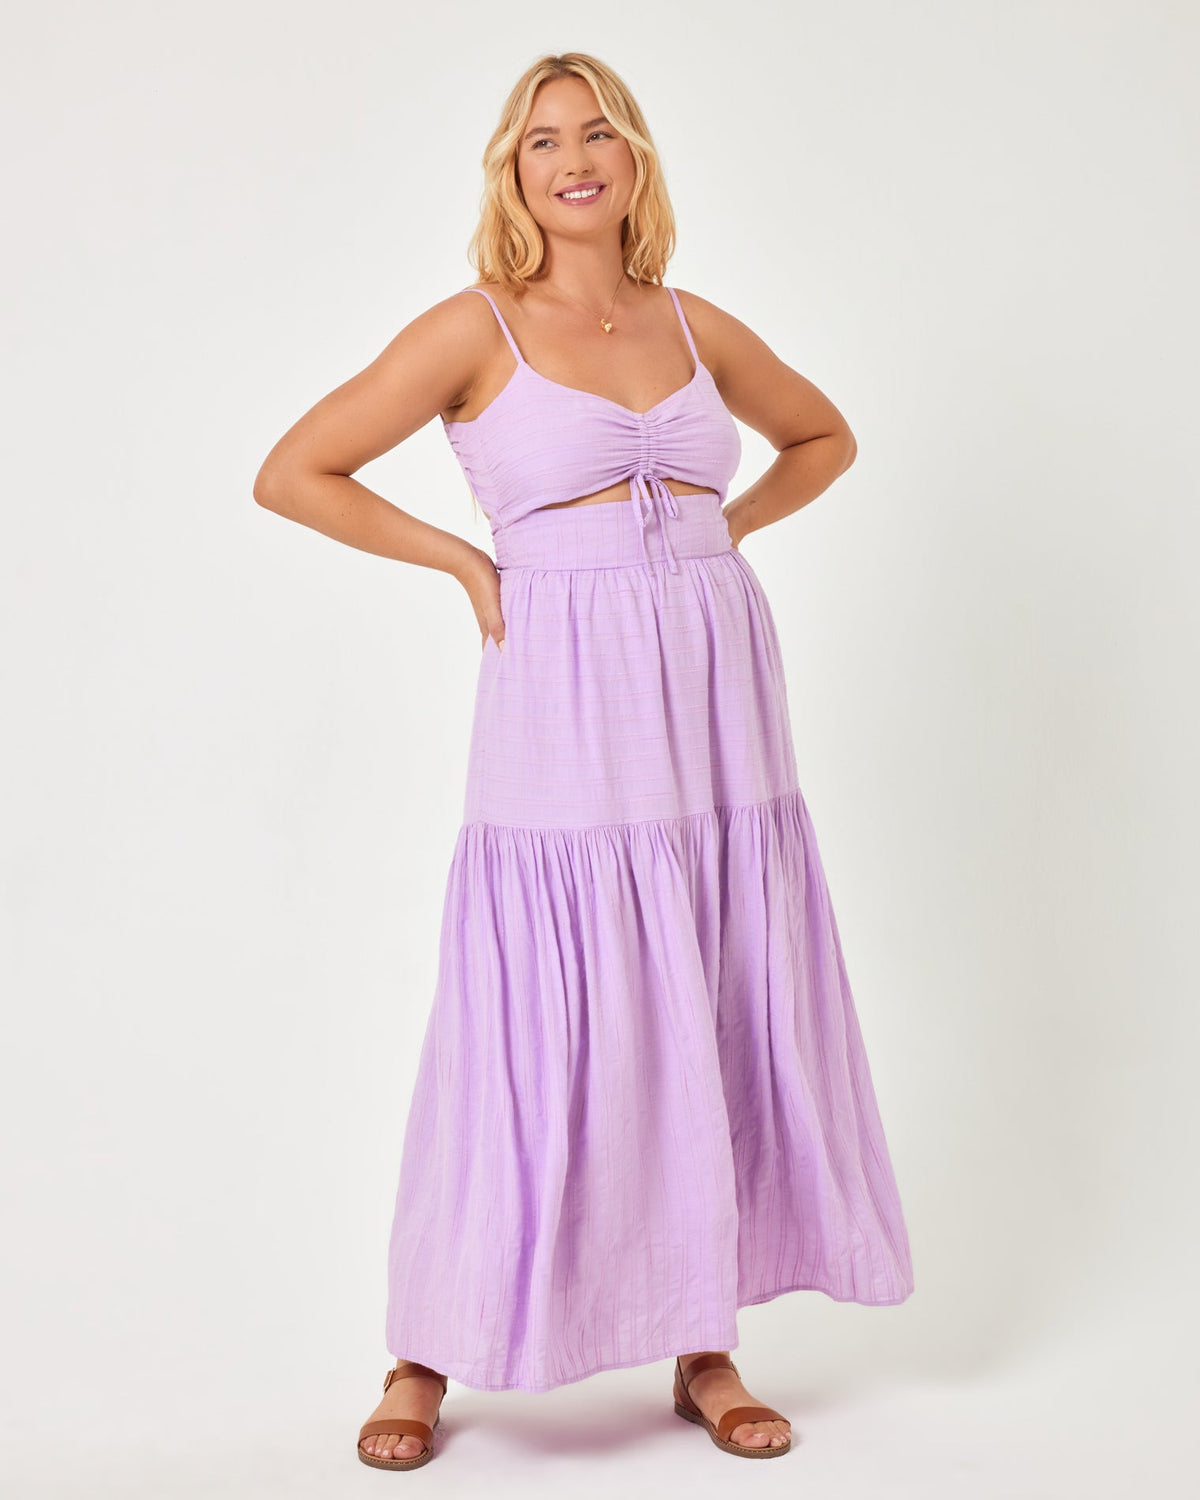 Zuri Dress Lily | Model: Sydney (size: XL)